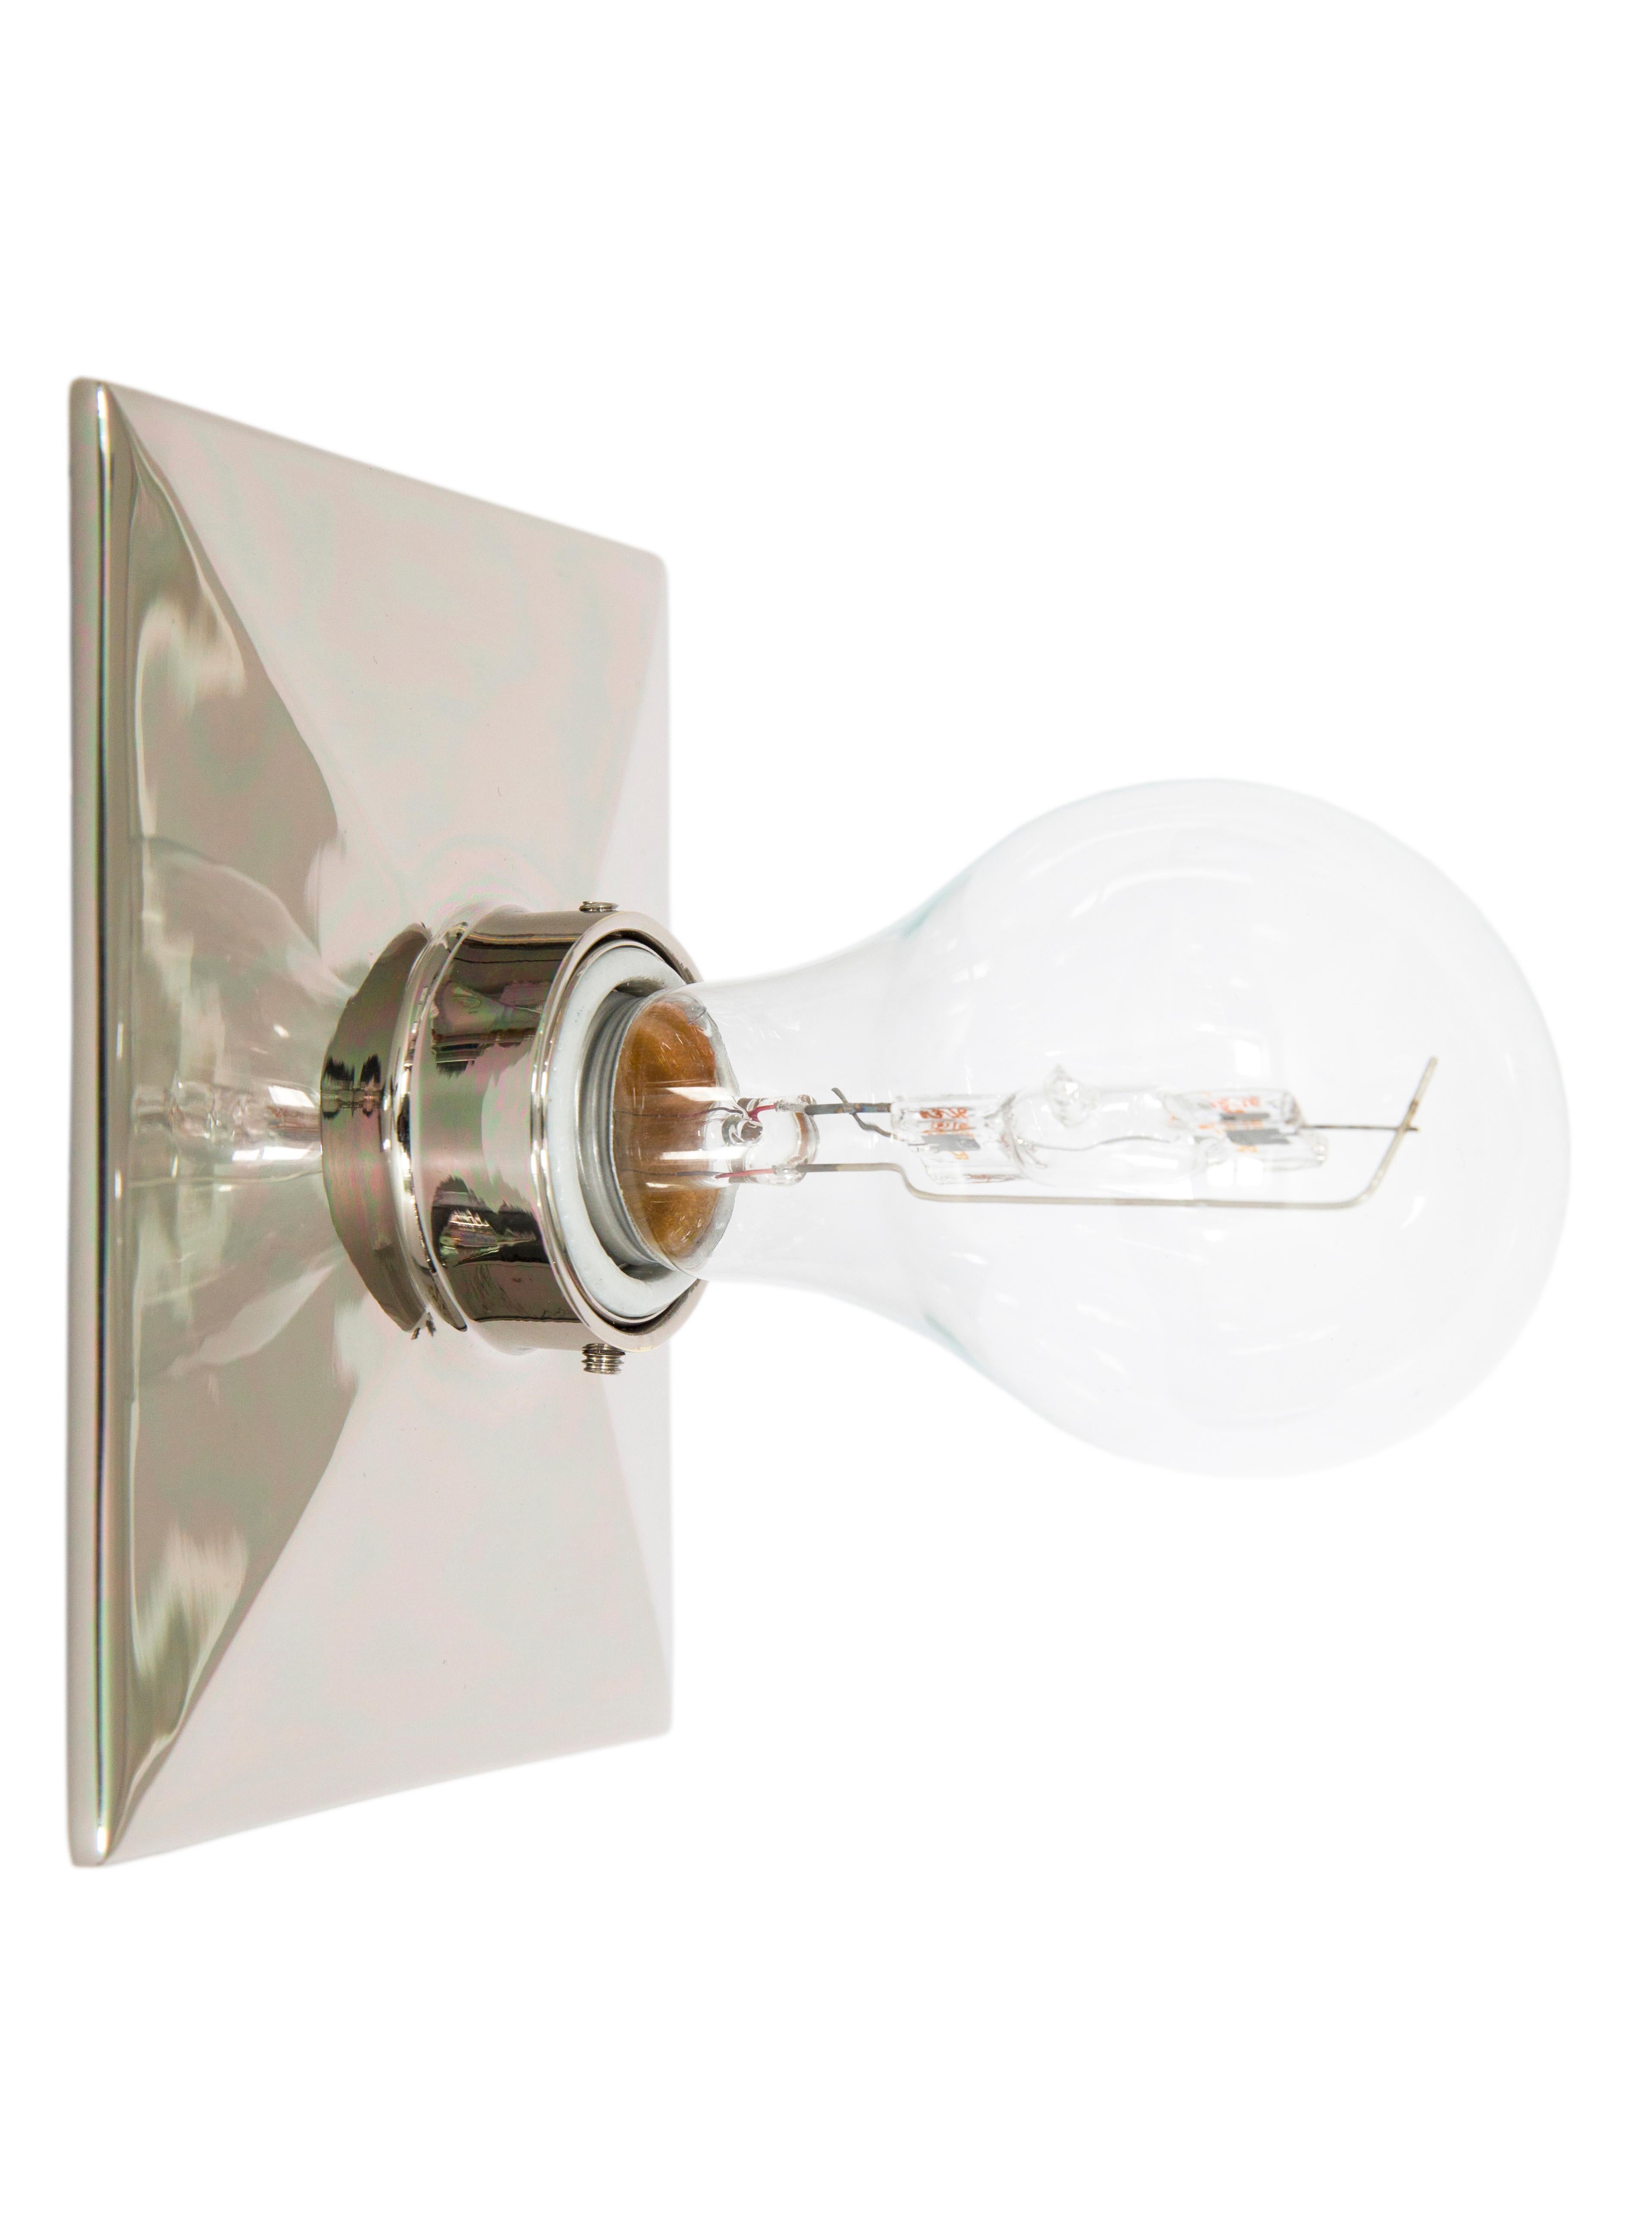 Die Vica Light ist eine rechteckige Metallgussplatte mit abgeschrägter Kante und Porzellanfassung. Die Leuchte kann an der Wand oder an der Decke montiert werden. 

Die maximale Wattzahl der empfohlenen Glühbirne beträgt 60 W. Die Vica Light ist